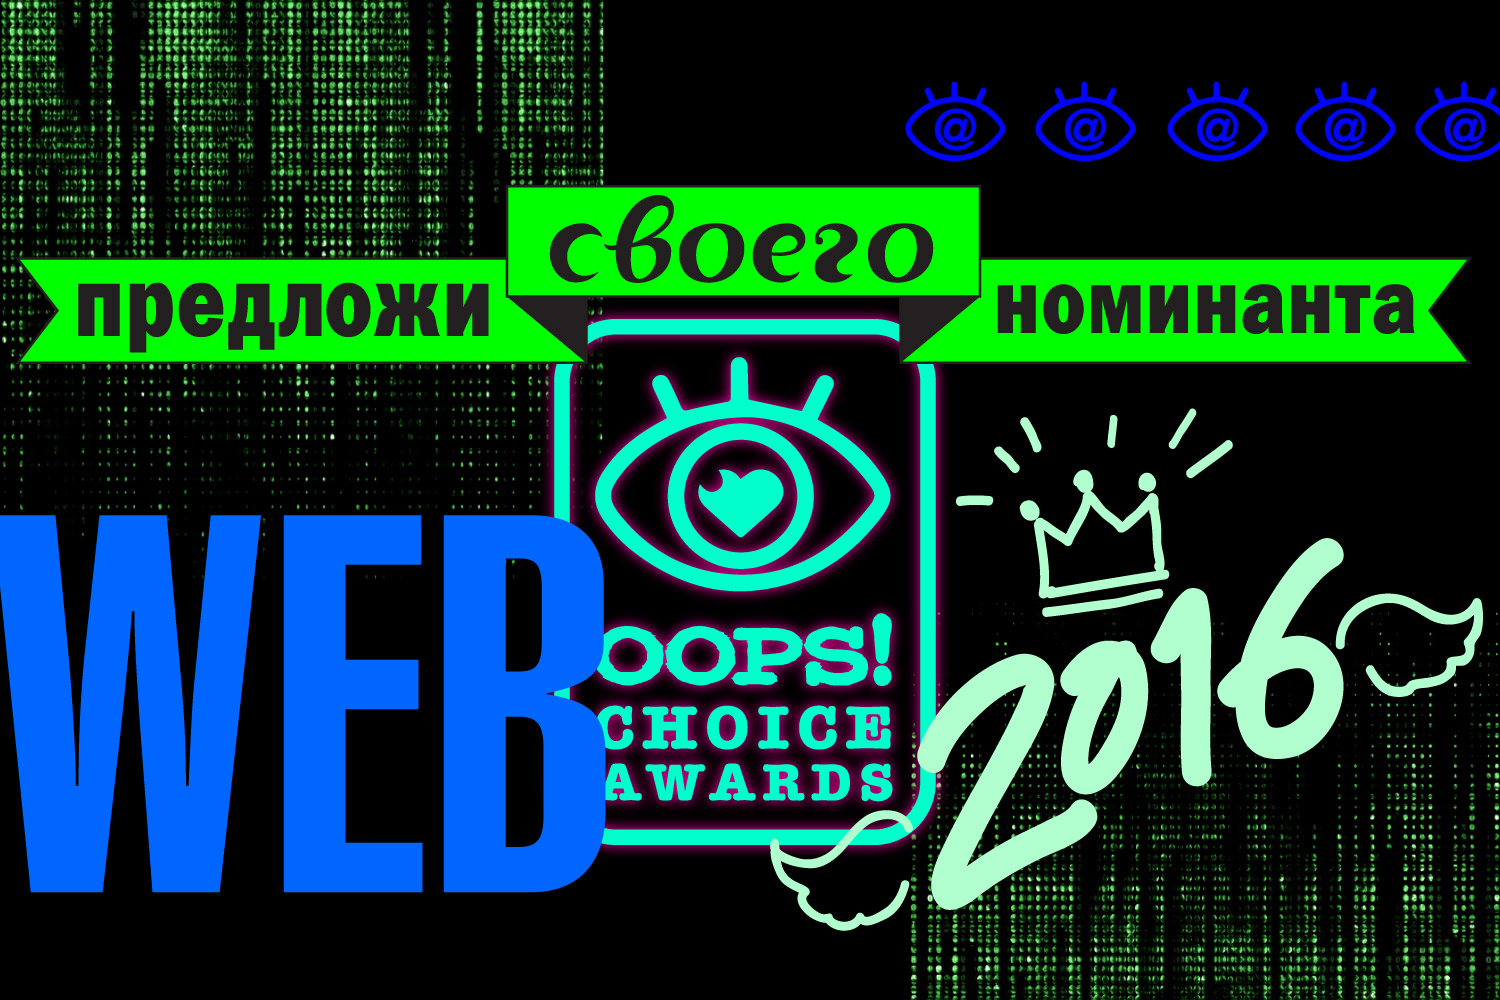 OOPS! Choice Awards: кого ты считаешь лучшим блогером?